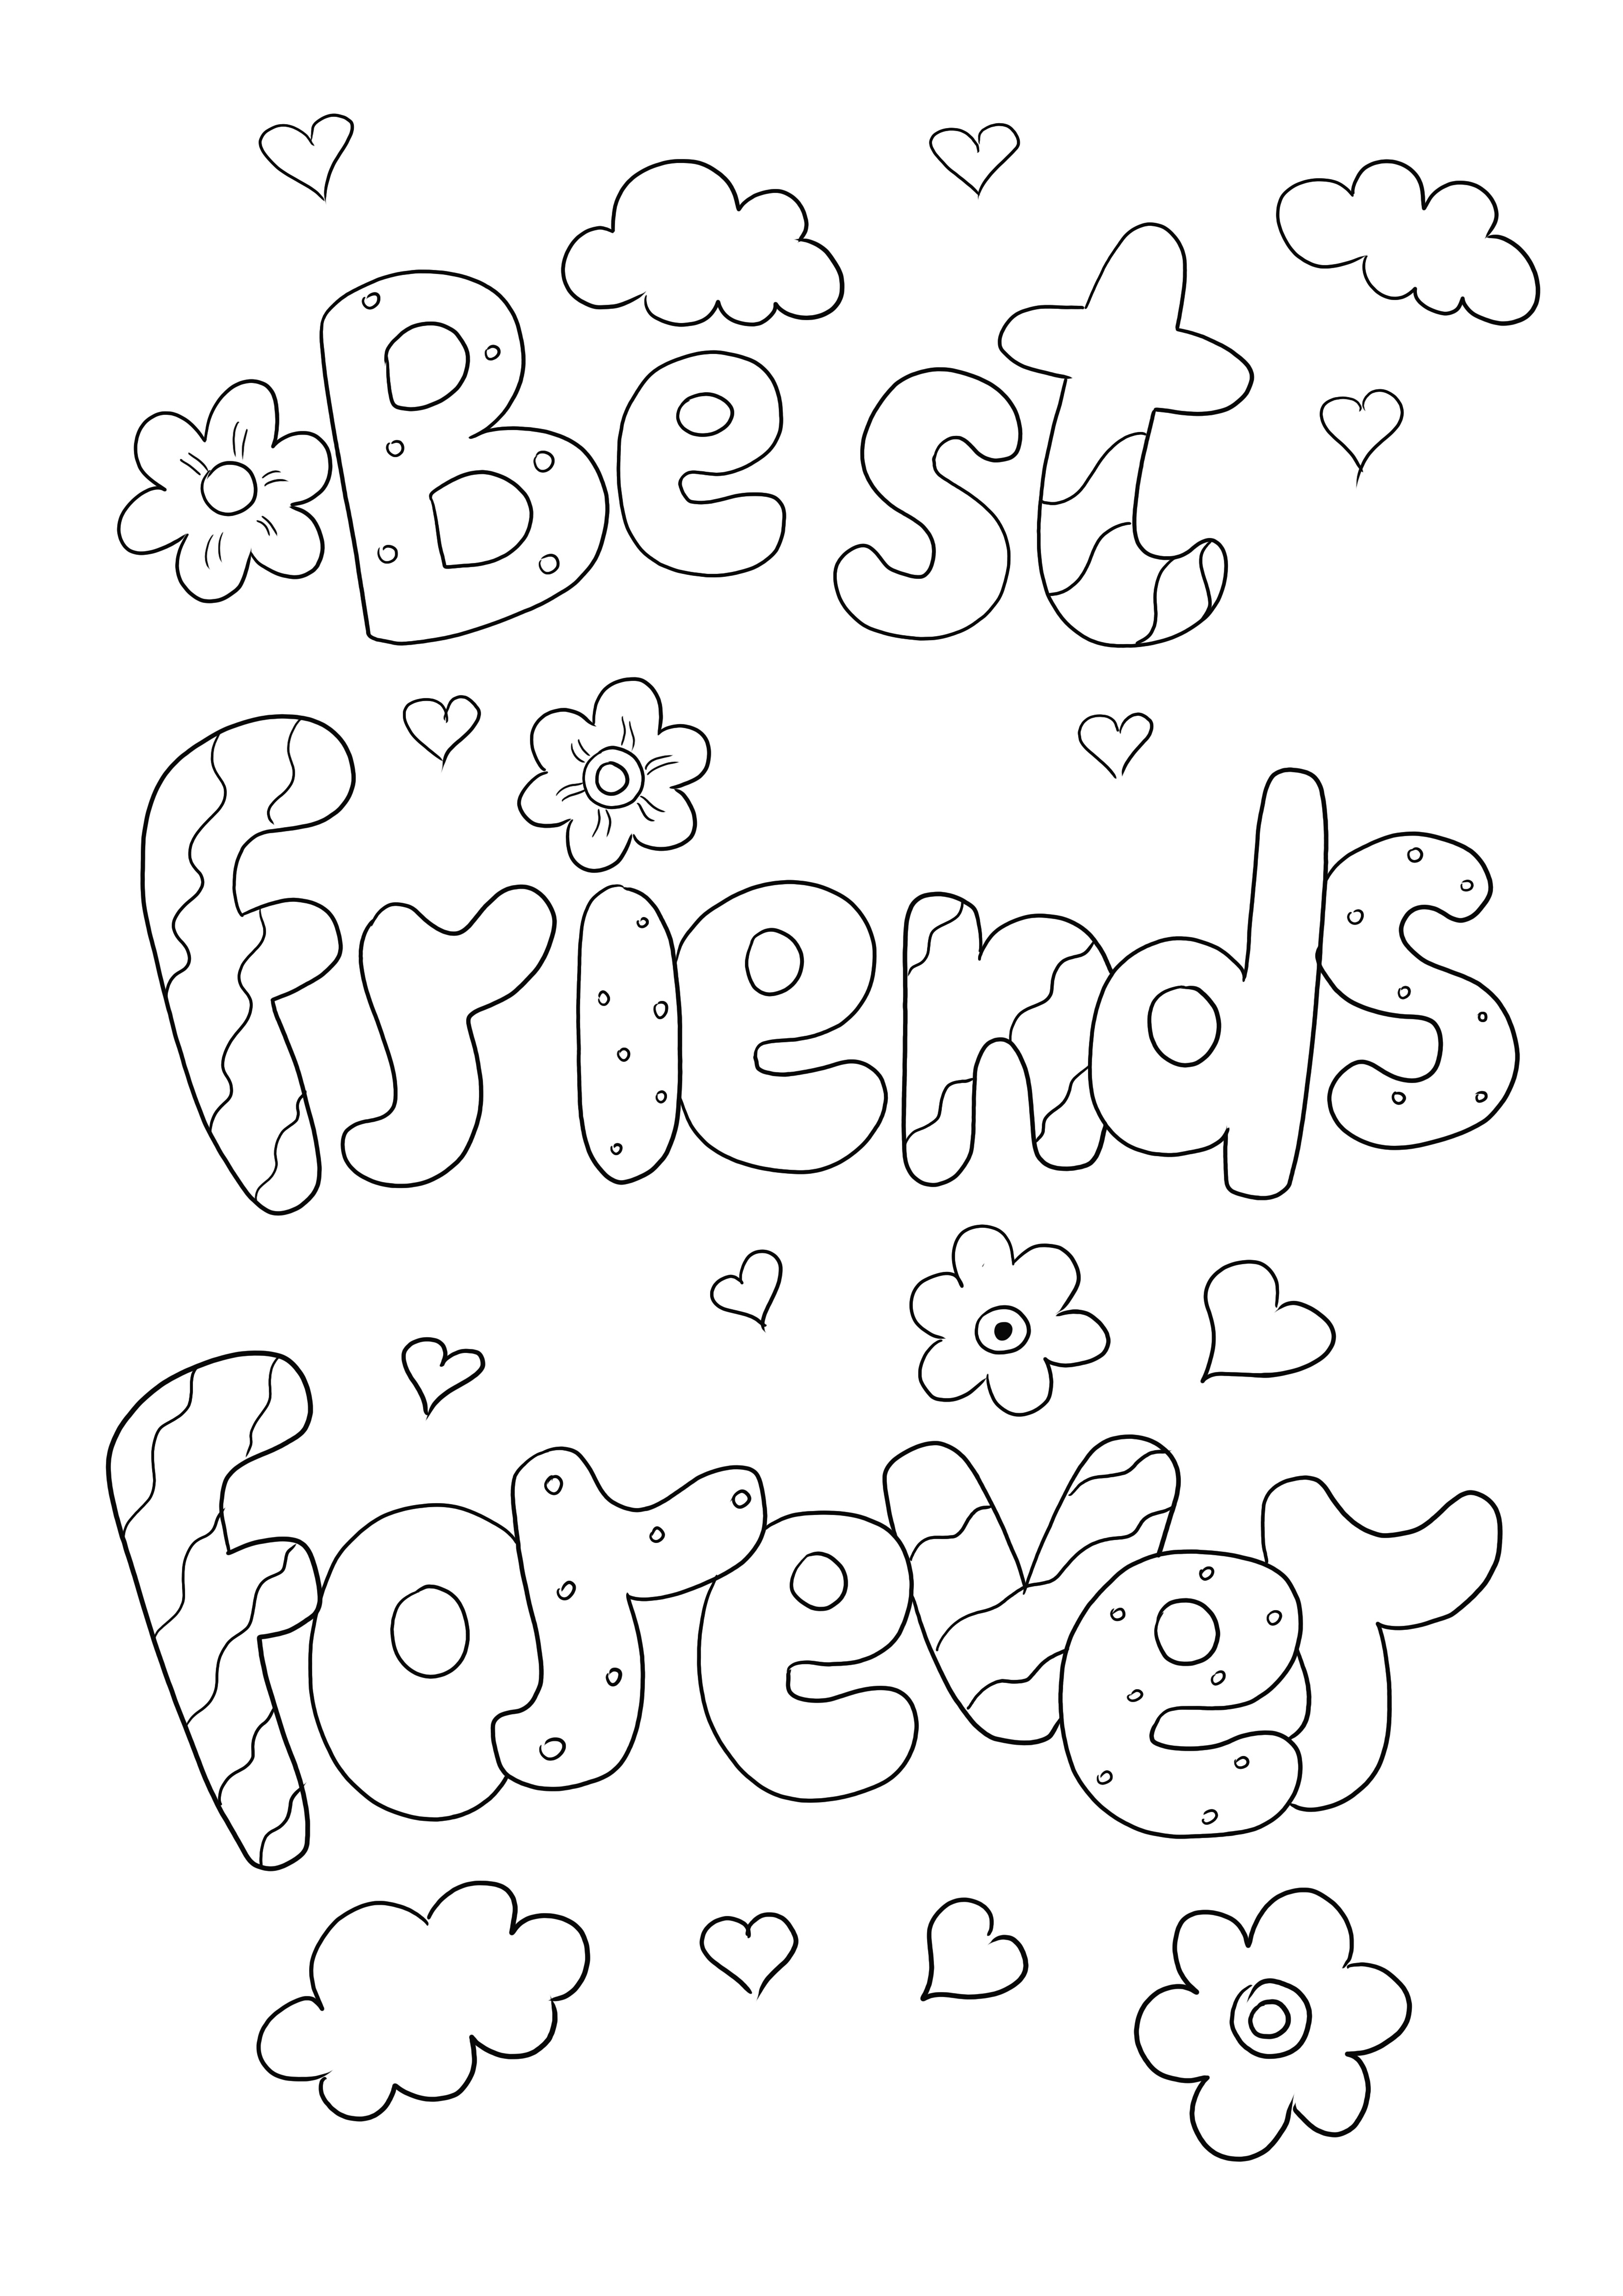 Best Friends Forever Ausmalbild kostenlos zum Download oder Direktdruck